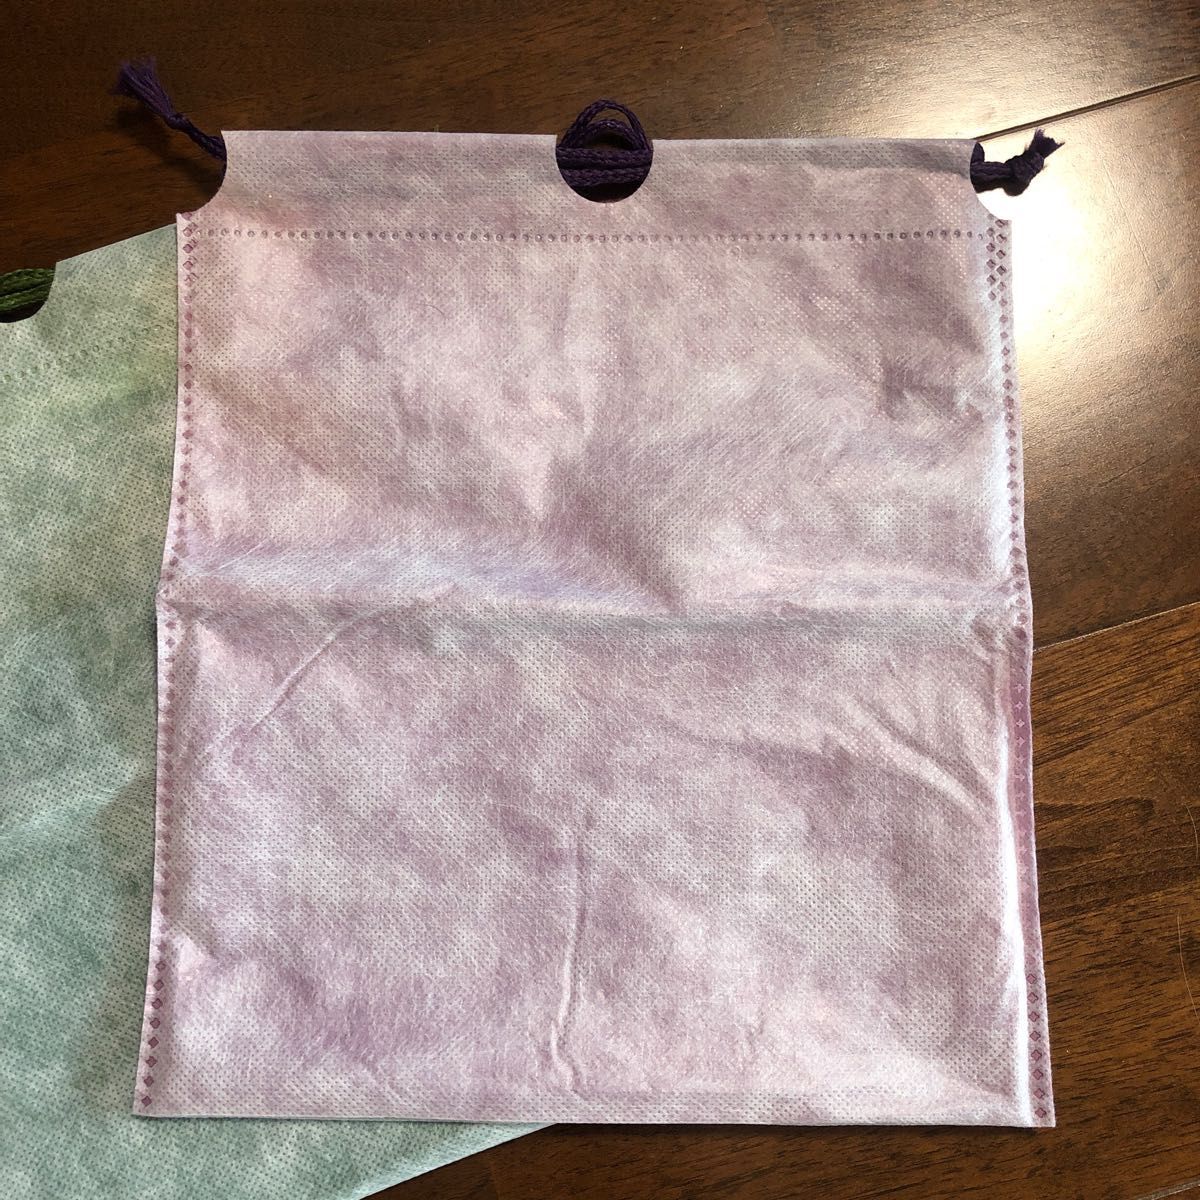 アメニティ 不織布防水巾着袋 二枚セットグリーン 緑 パープル 紫サイズ